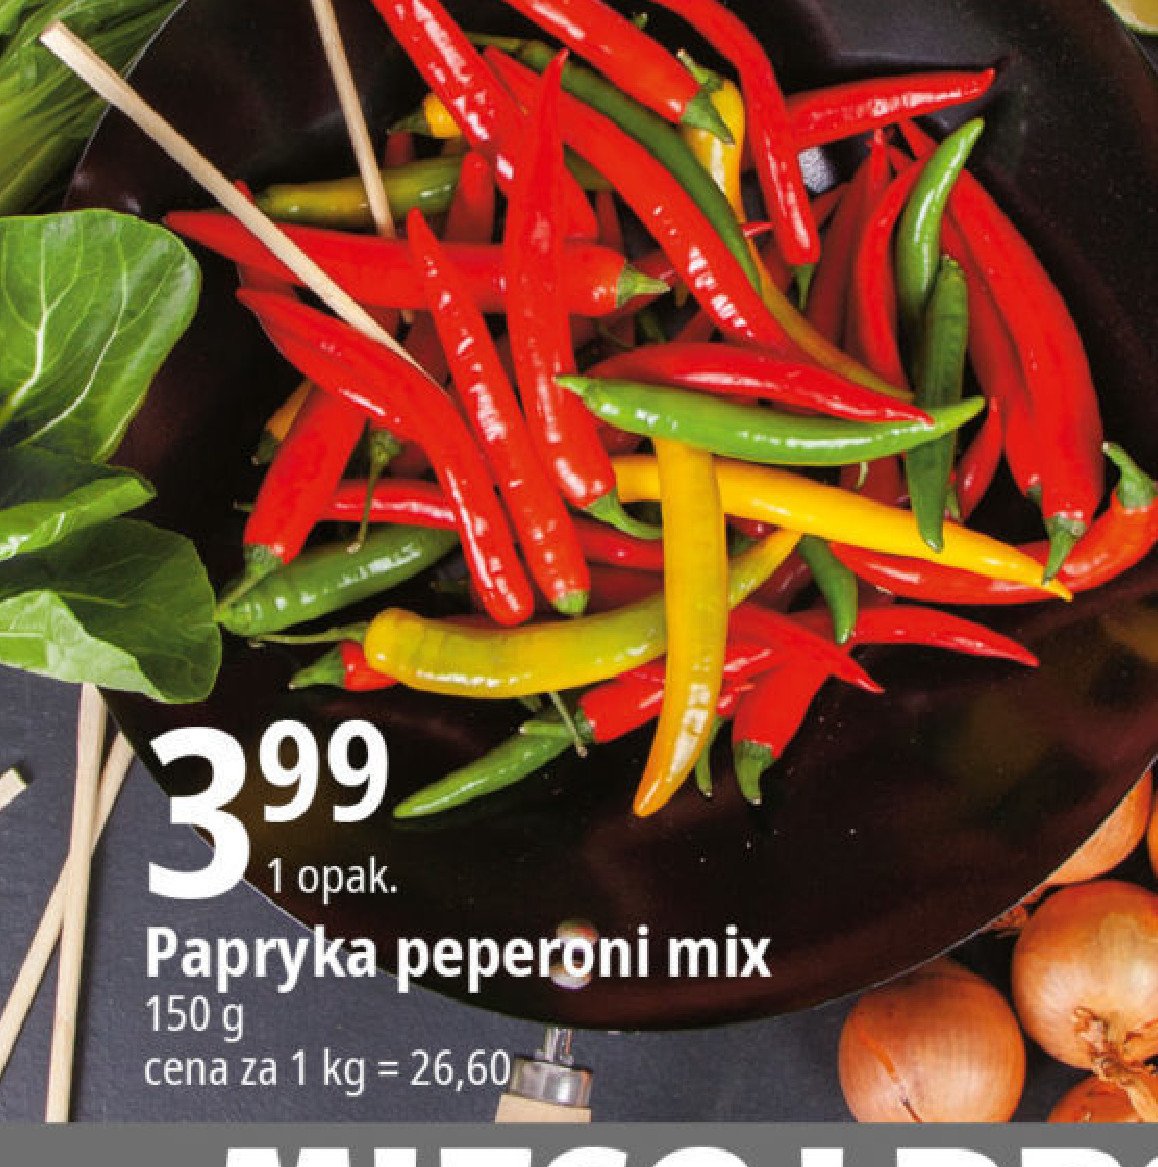 Papryka pepperoni mix promocja